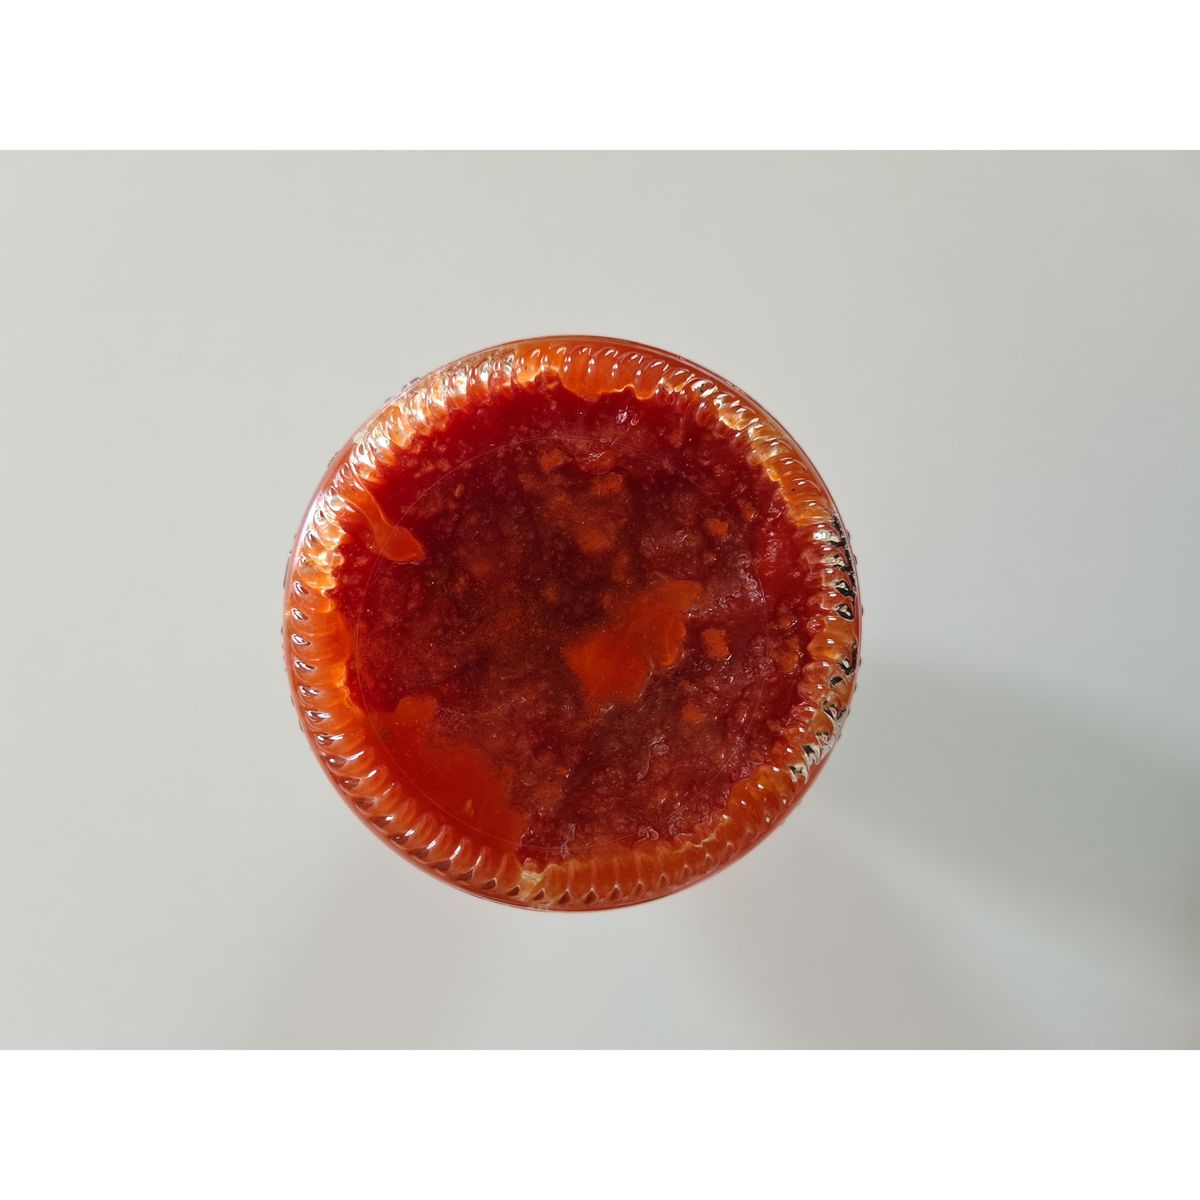 Mutti Polpa Rustica Gehakte Tomaten in stukjes 690g